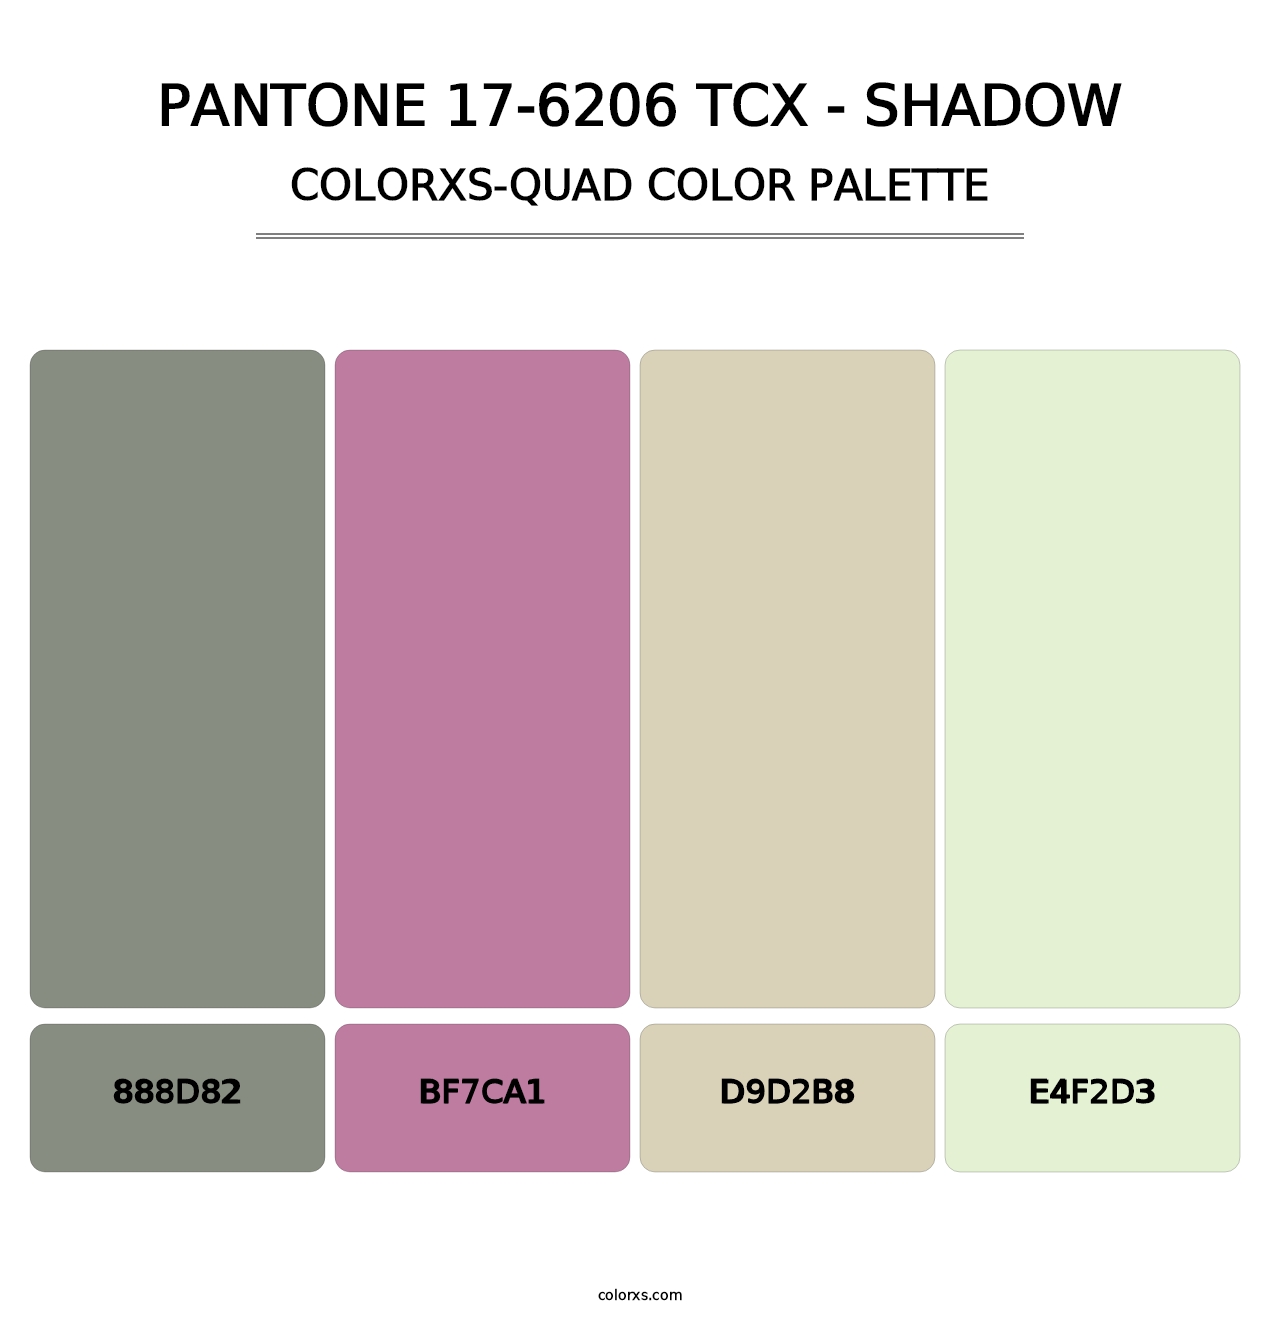 PANTONE 17-6206 TCX - Shadow - Colorxs Quad Palette